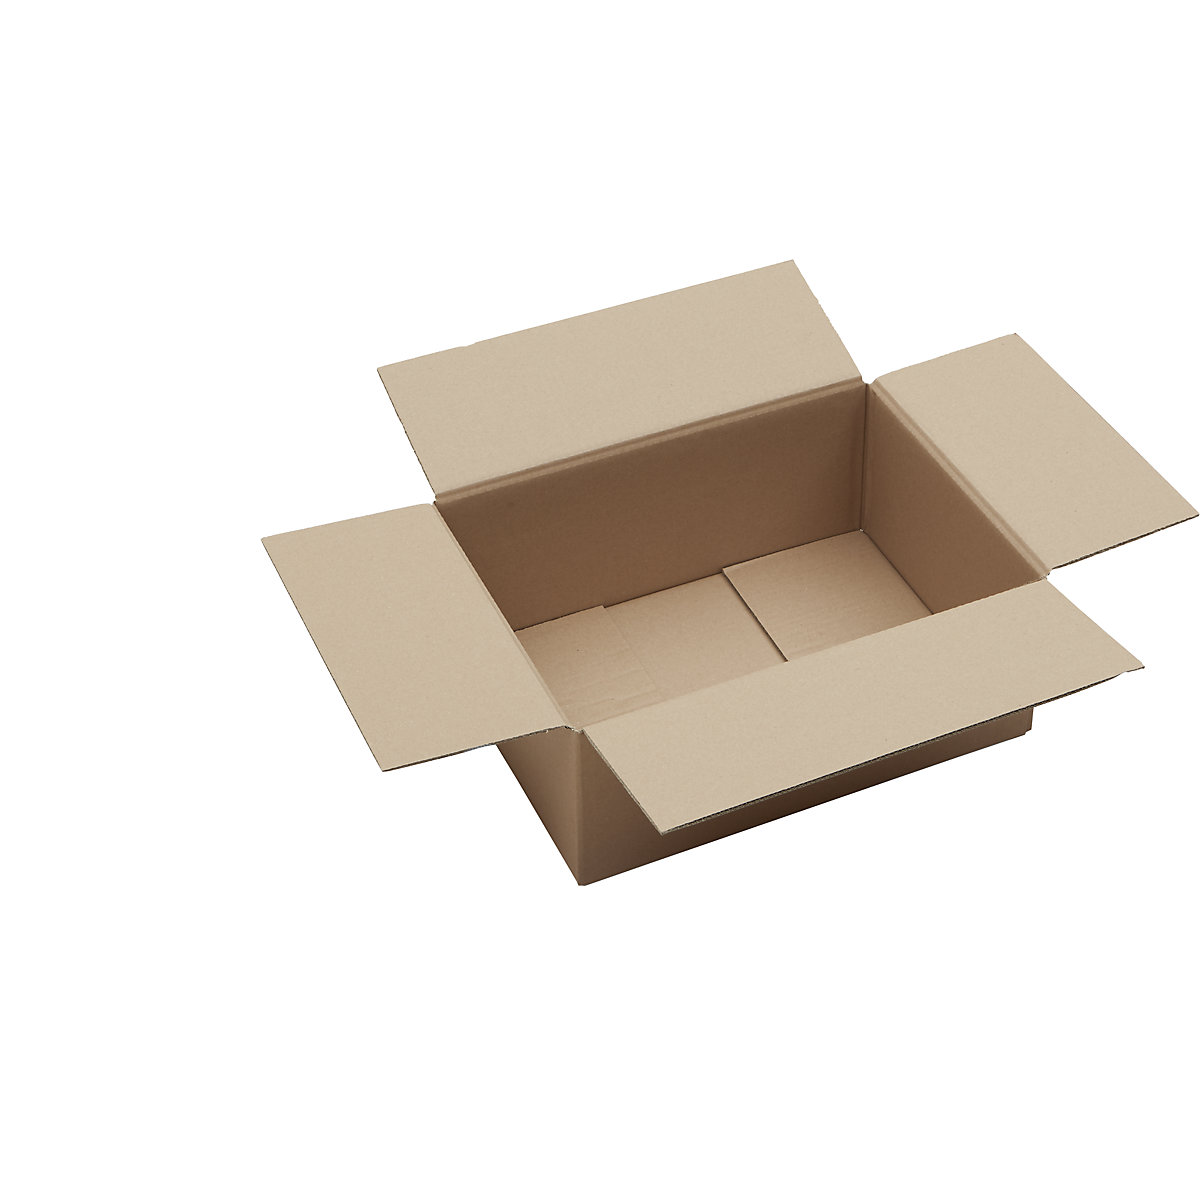 Skládací krabice z vlnité lepenky, FEFCO 0201, dvouvrstvá, bal.j. 50 ks, vnitřní rozměry 375 x 275 x 150 mm-11